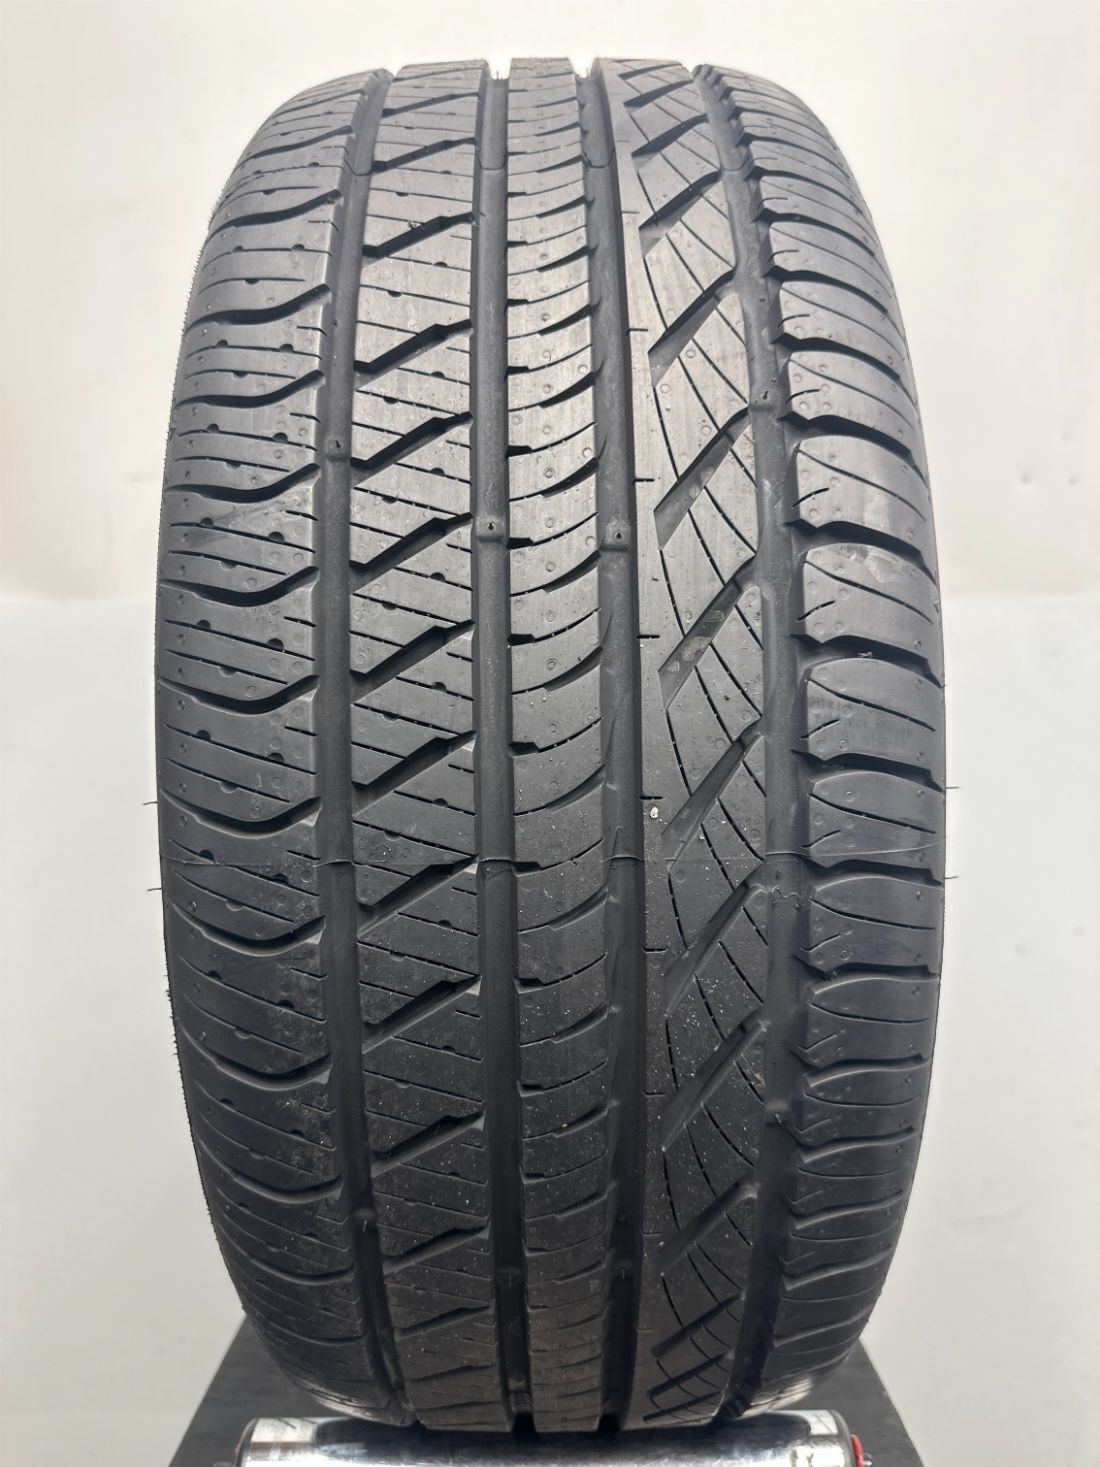 1 Kumho Ecsta 4X II Used  Tire P255/45R20 2554520 255/45/20 - 10/32